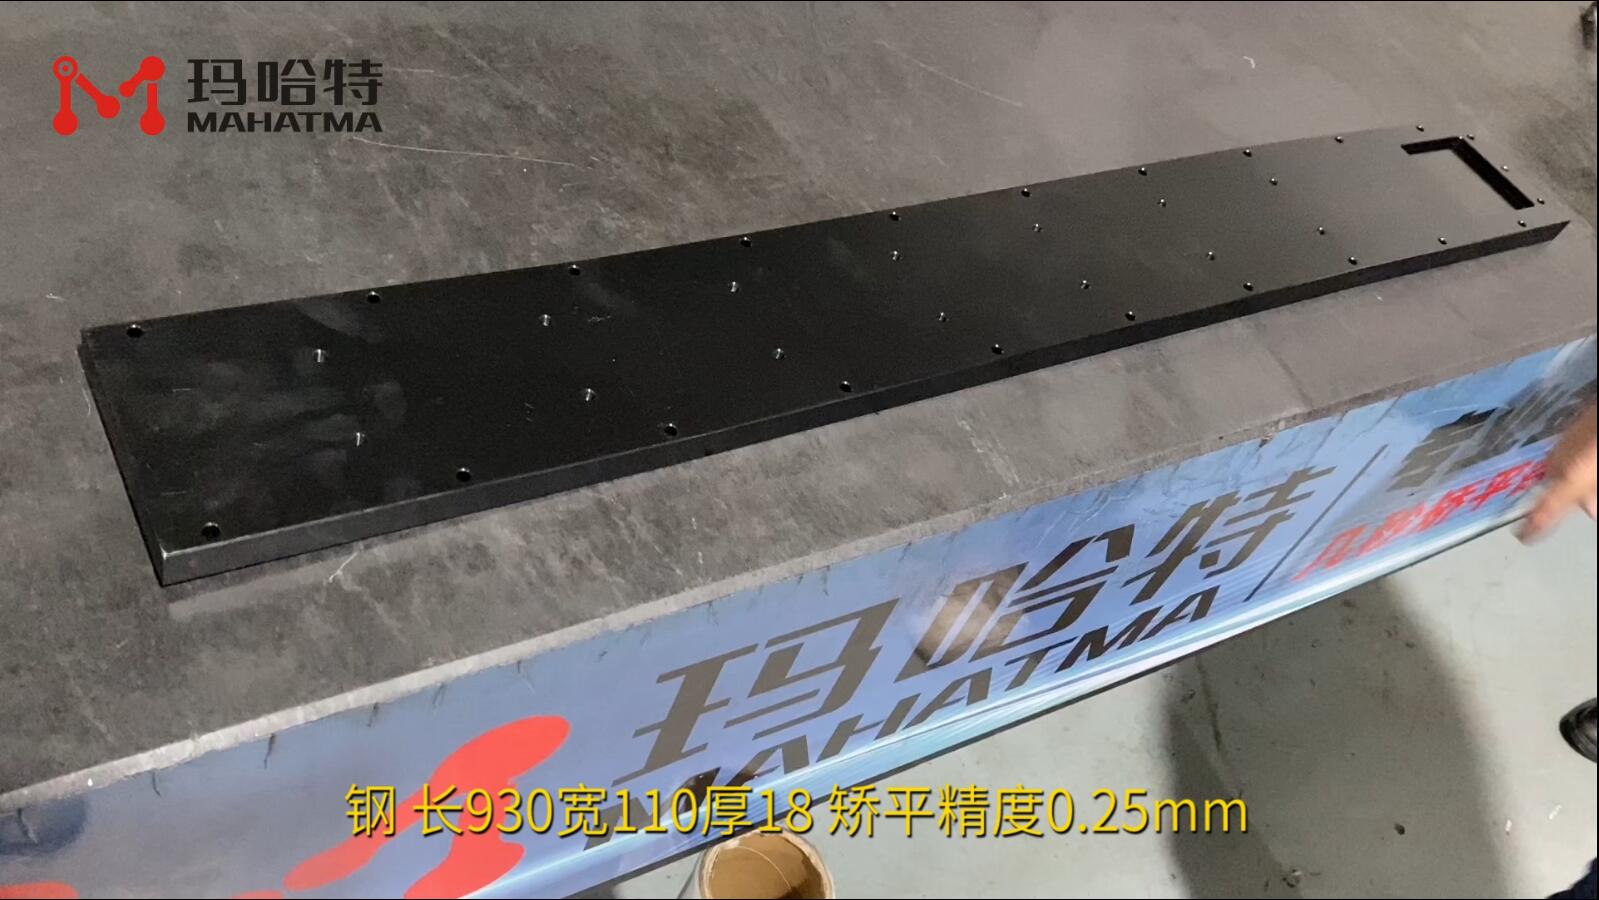 钢 MHT120-1300 长方形 长930宽110厚18 矫平精度0.25mm